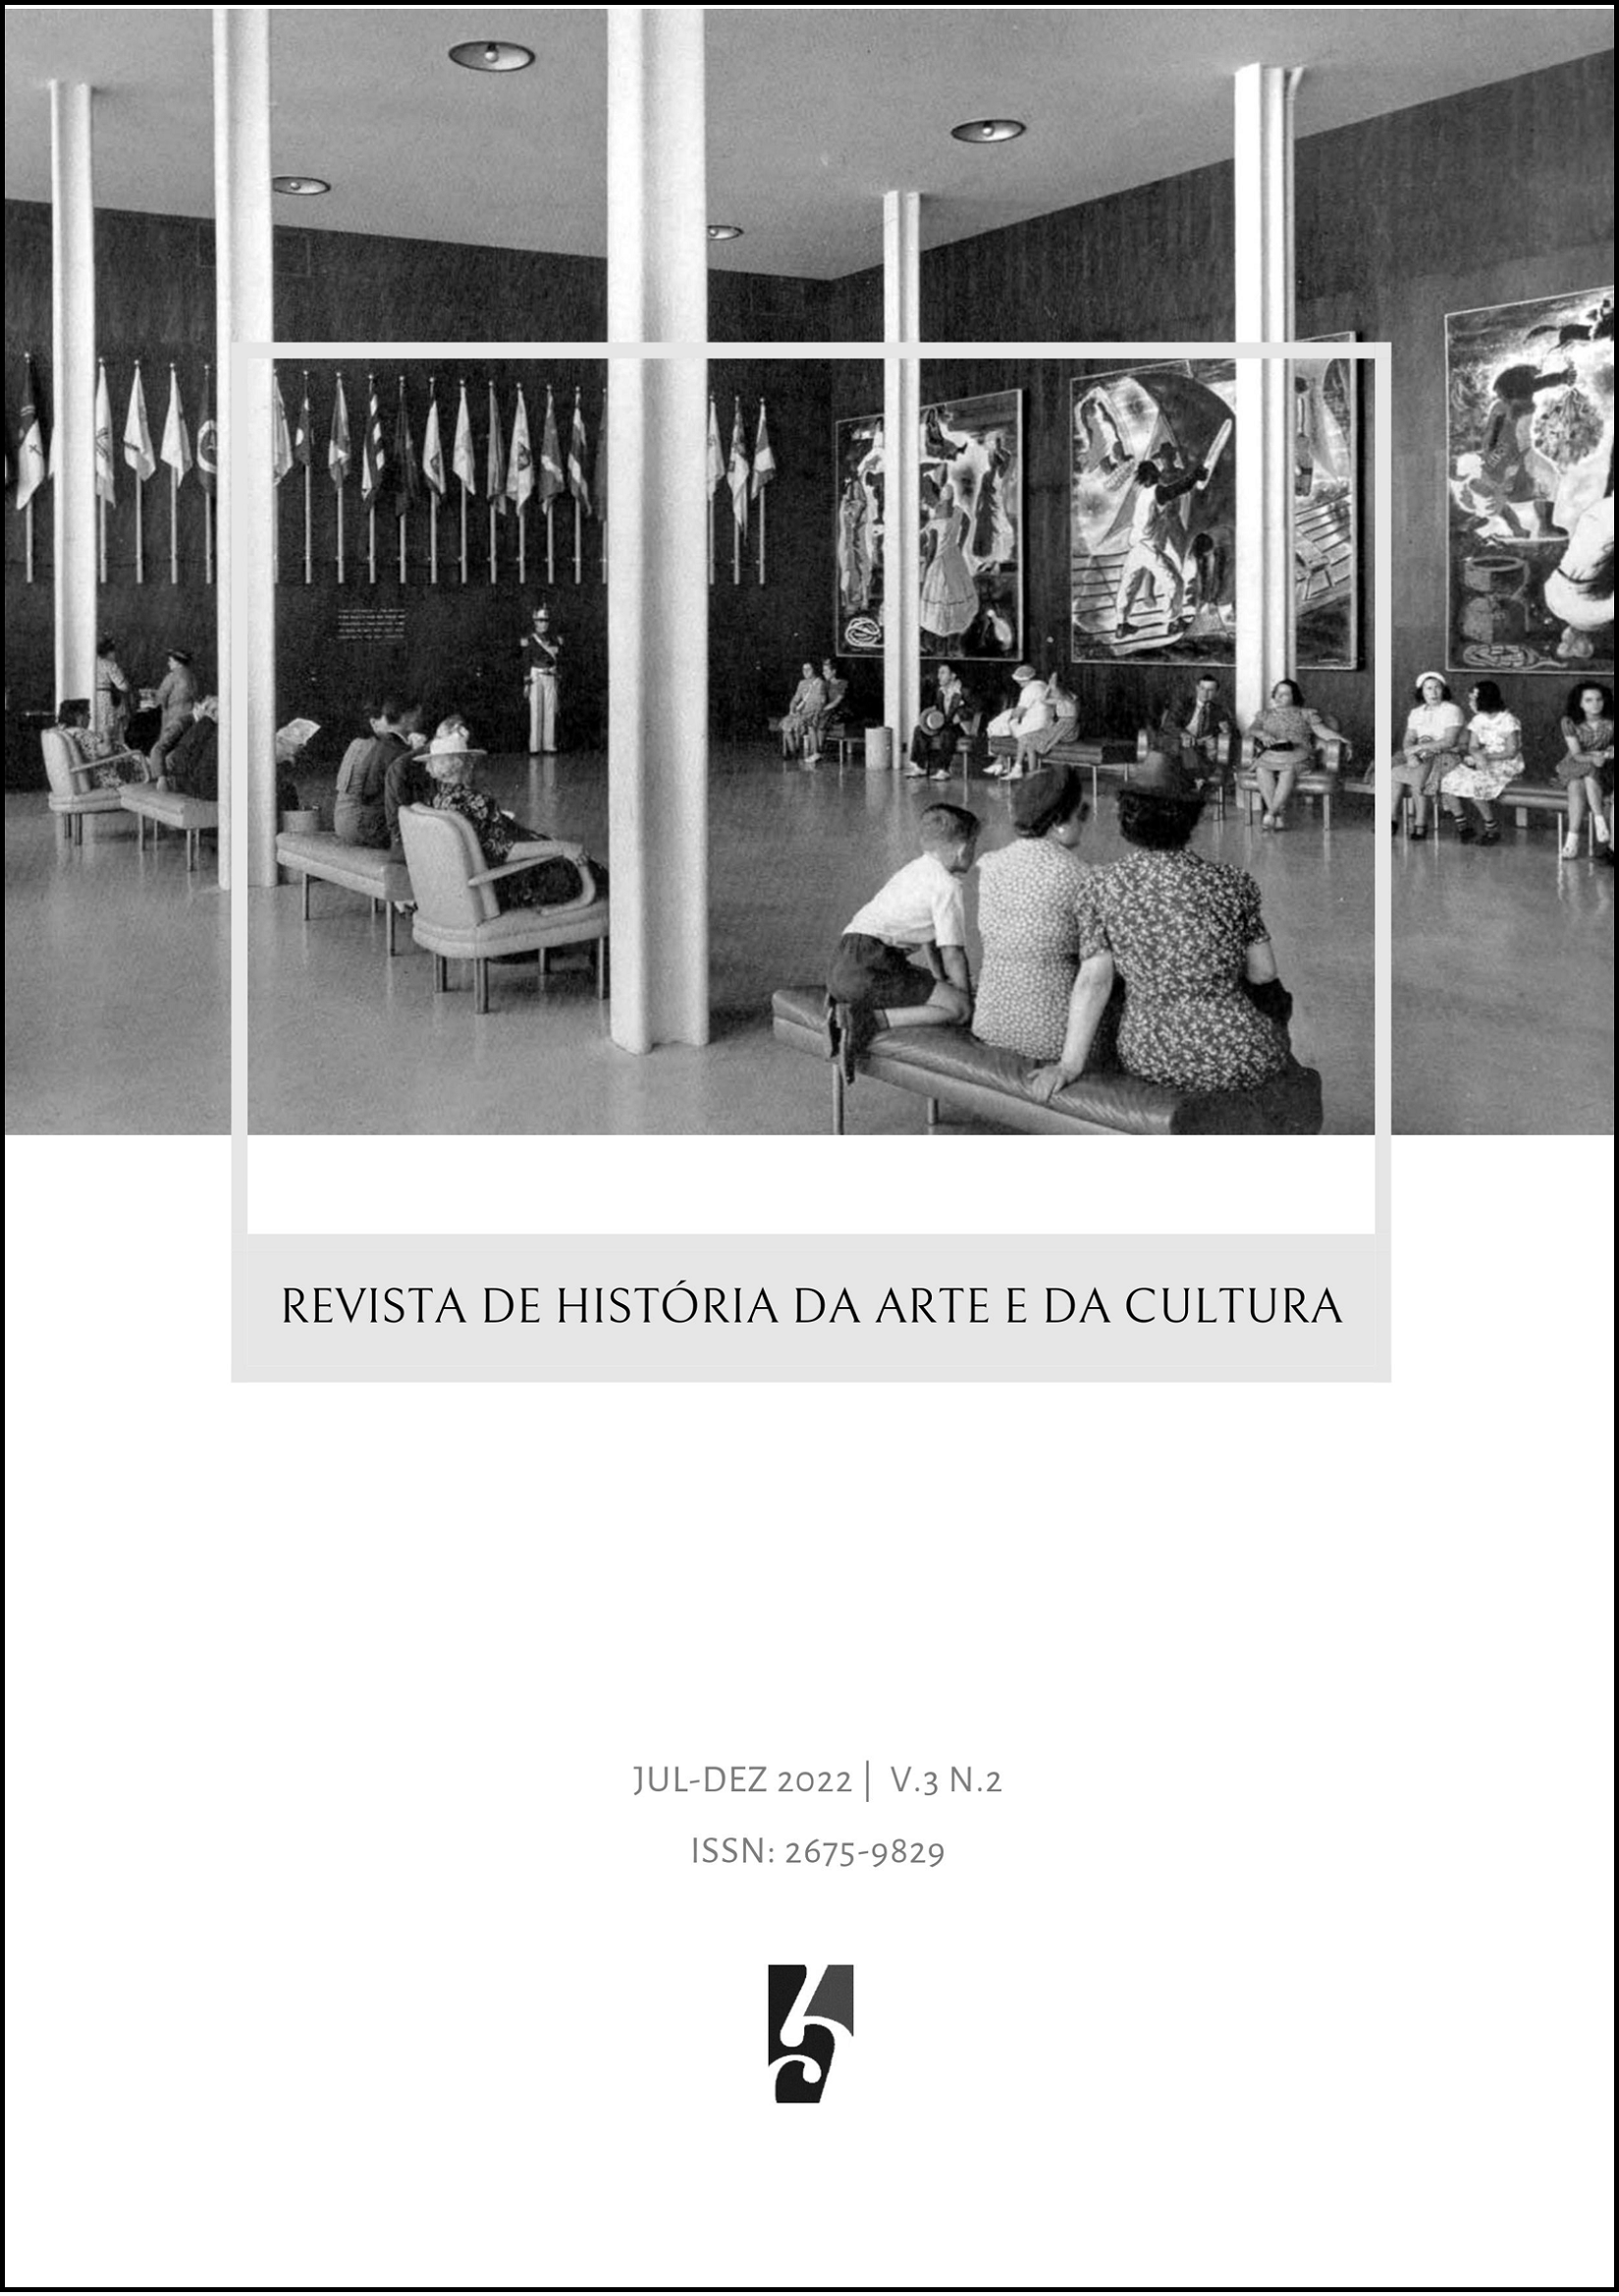 Capa: Os três painéis de Portinari expostos no Salão da Boa Vizinhança do Pavilhão do Brasil na Feira Mundial de Nova York (1939). Representação do Brasil na Feira Mundial de Nova York/ F. S. Lincoln.